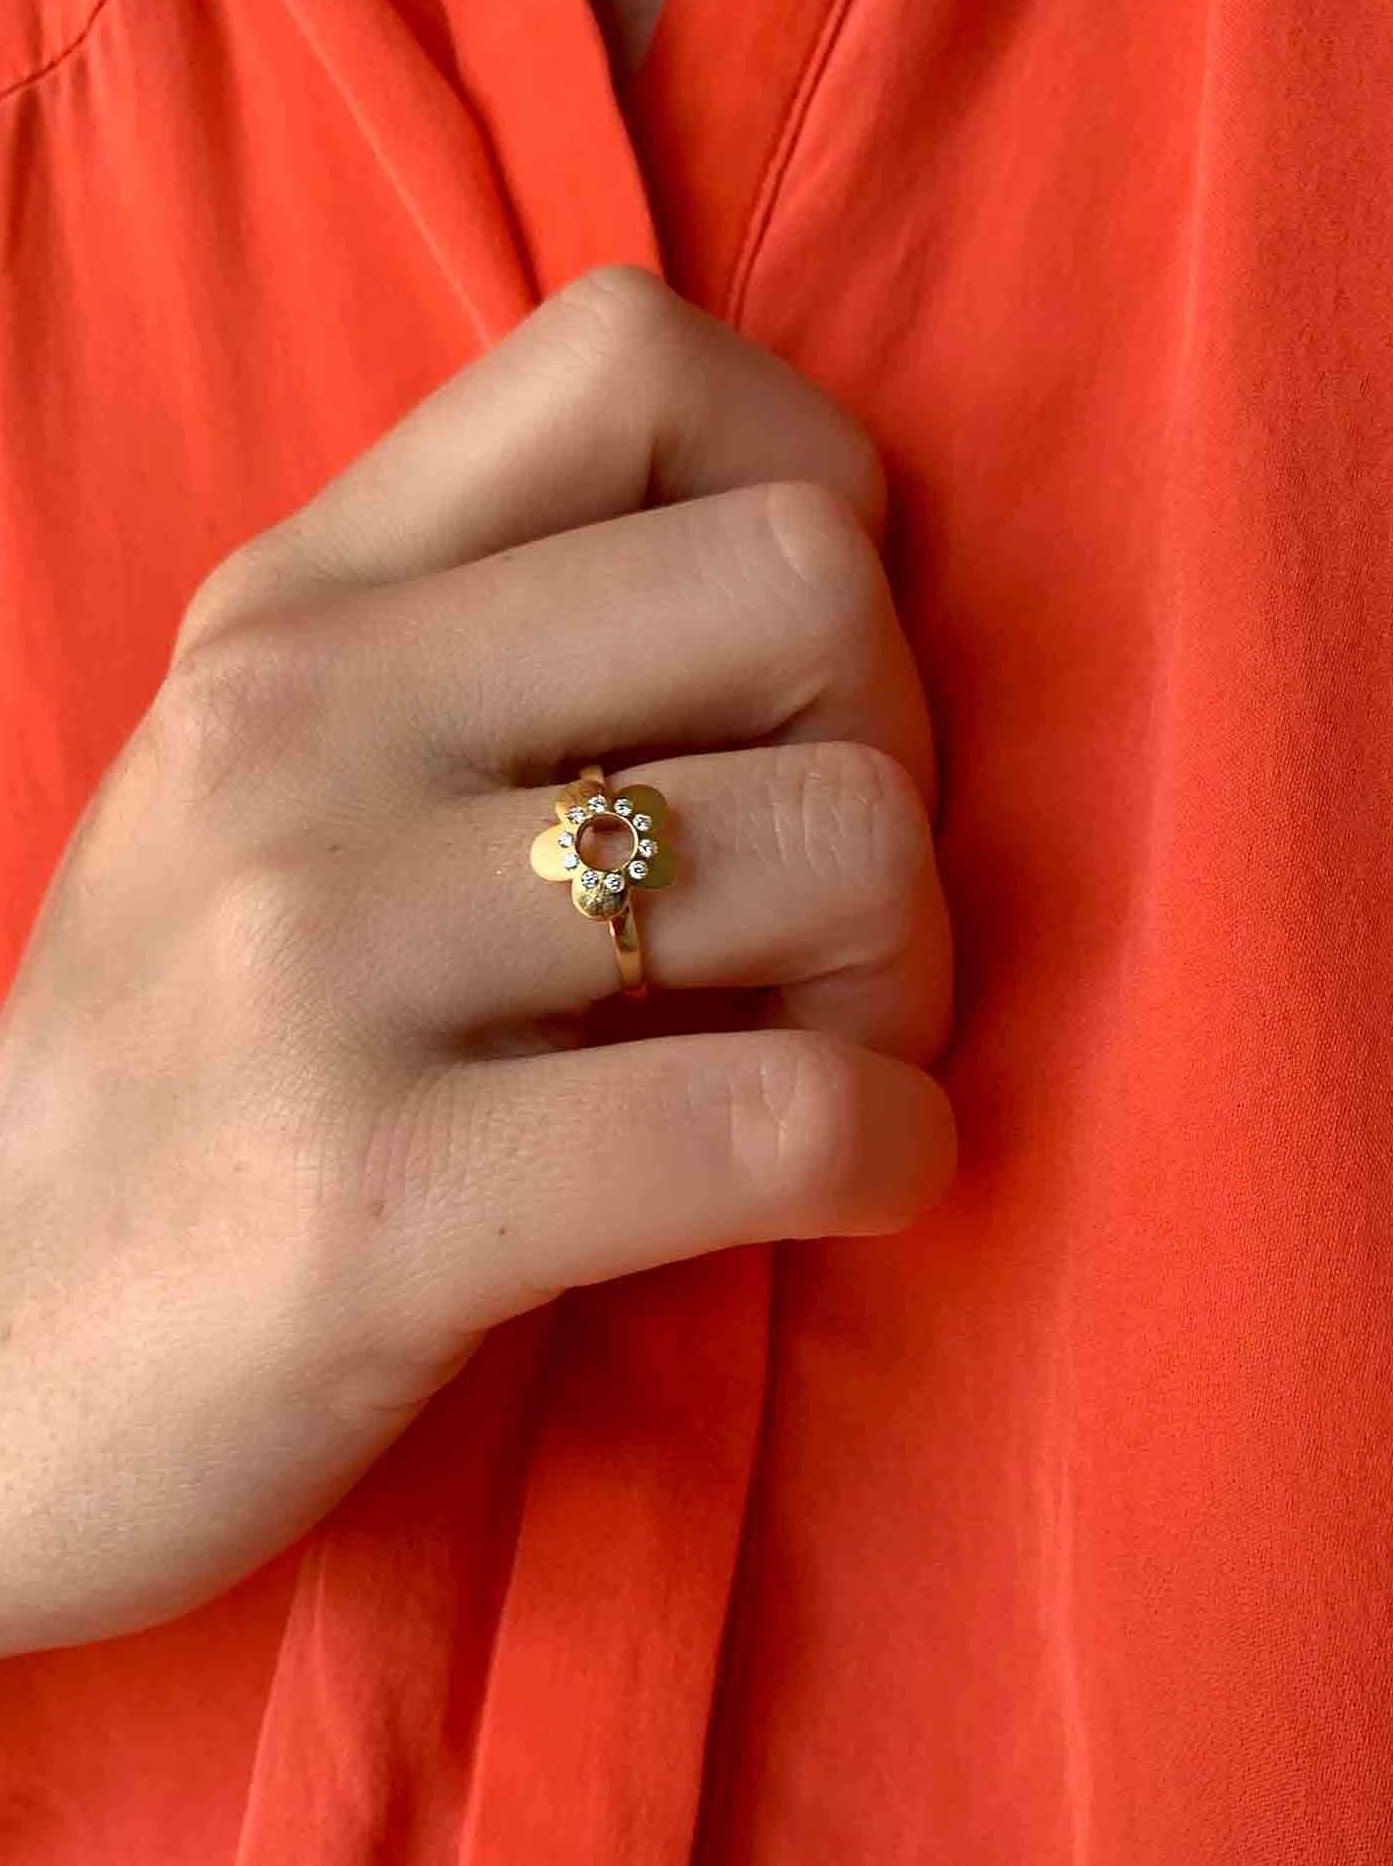 Flower Power ring